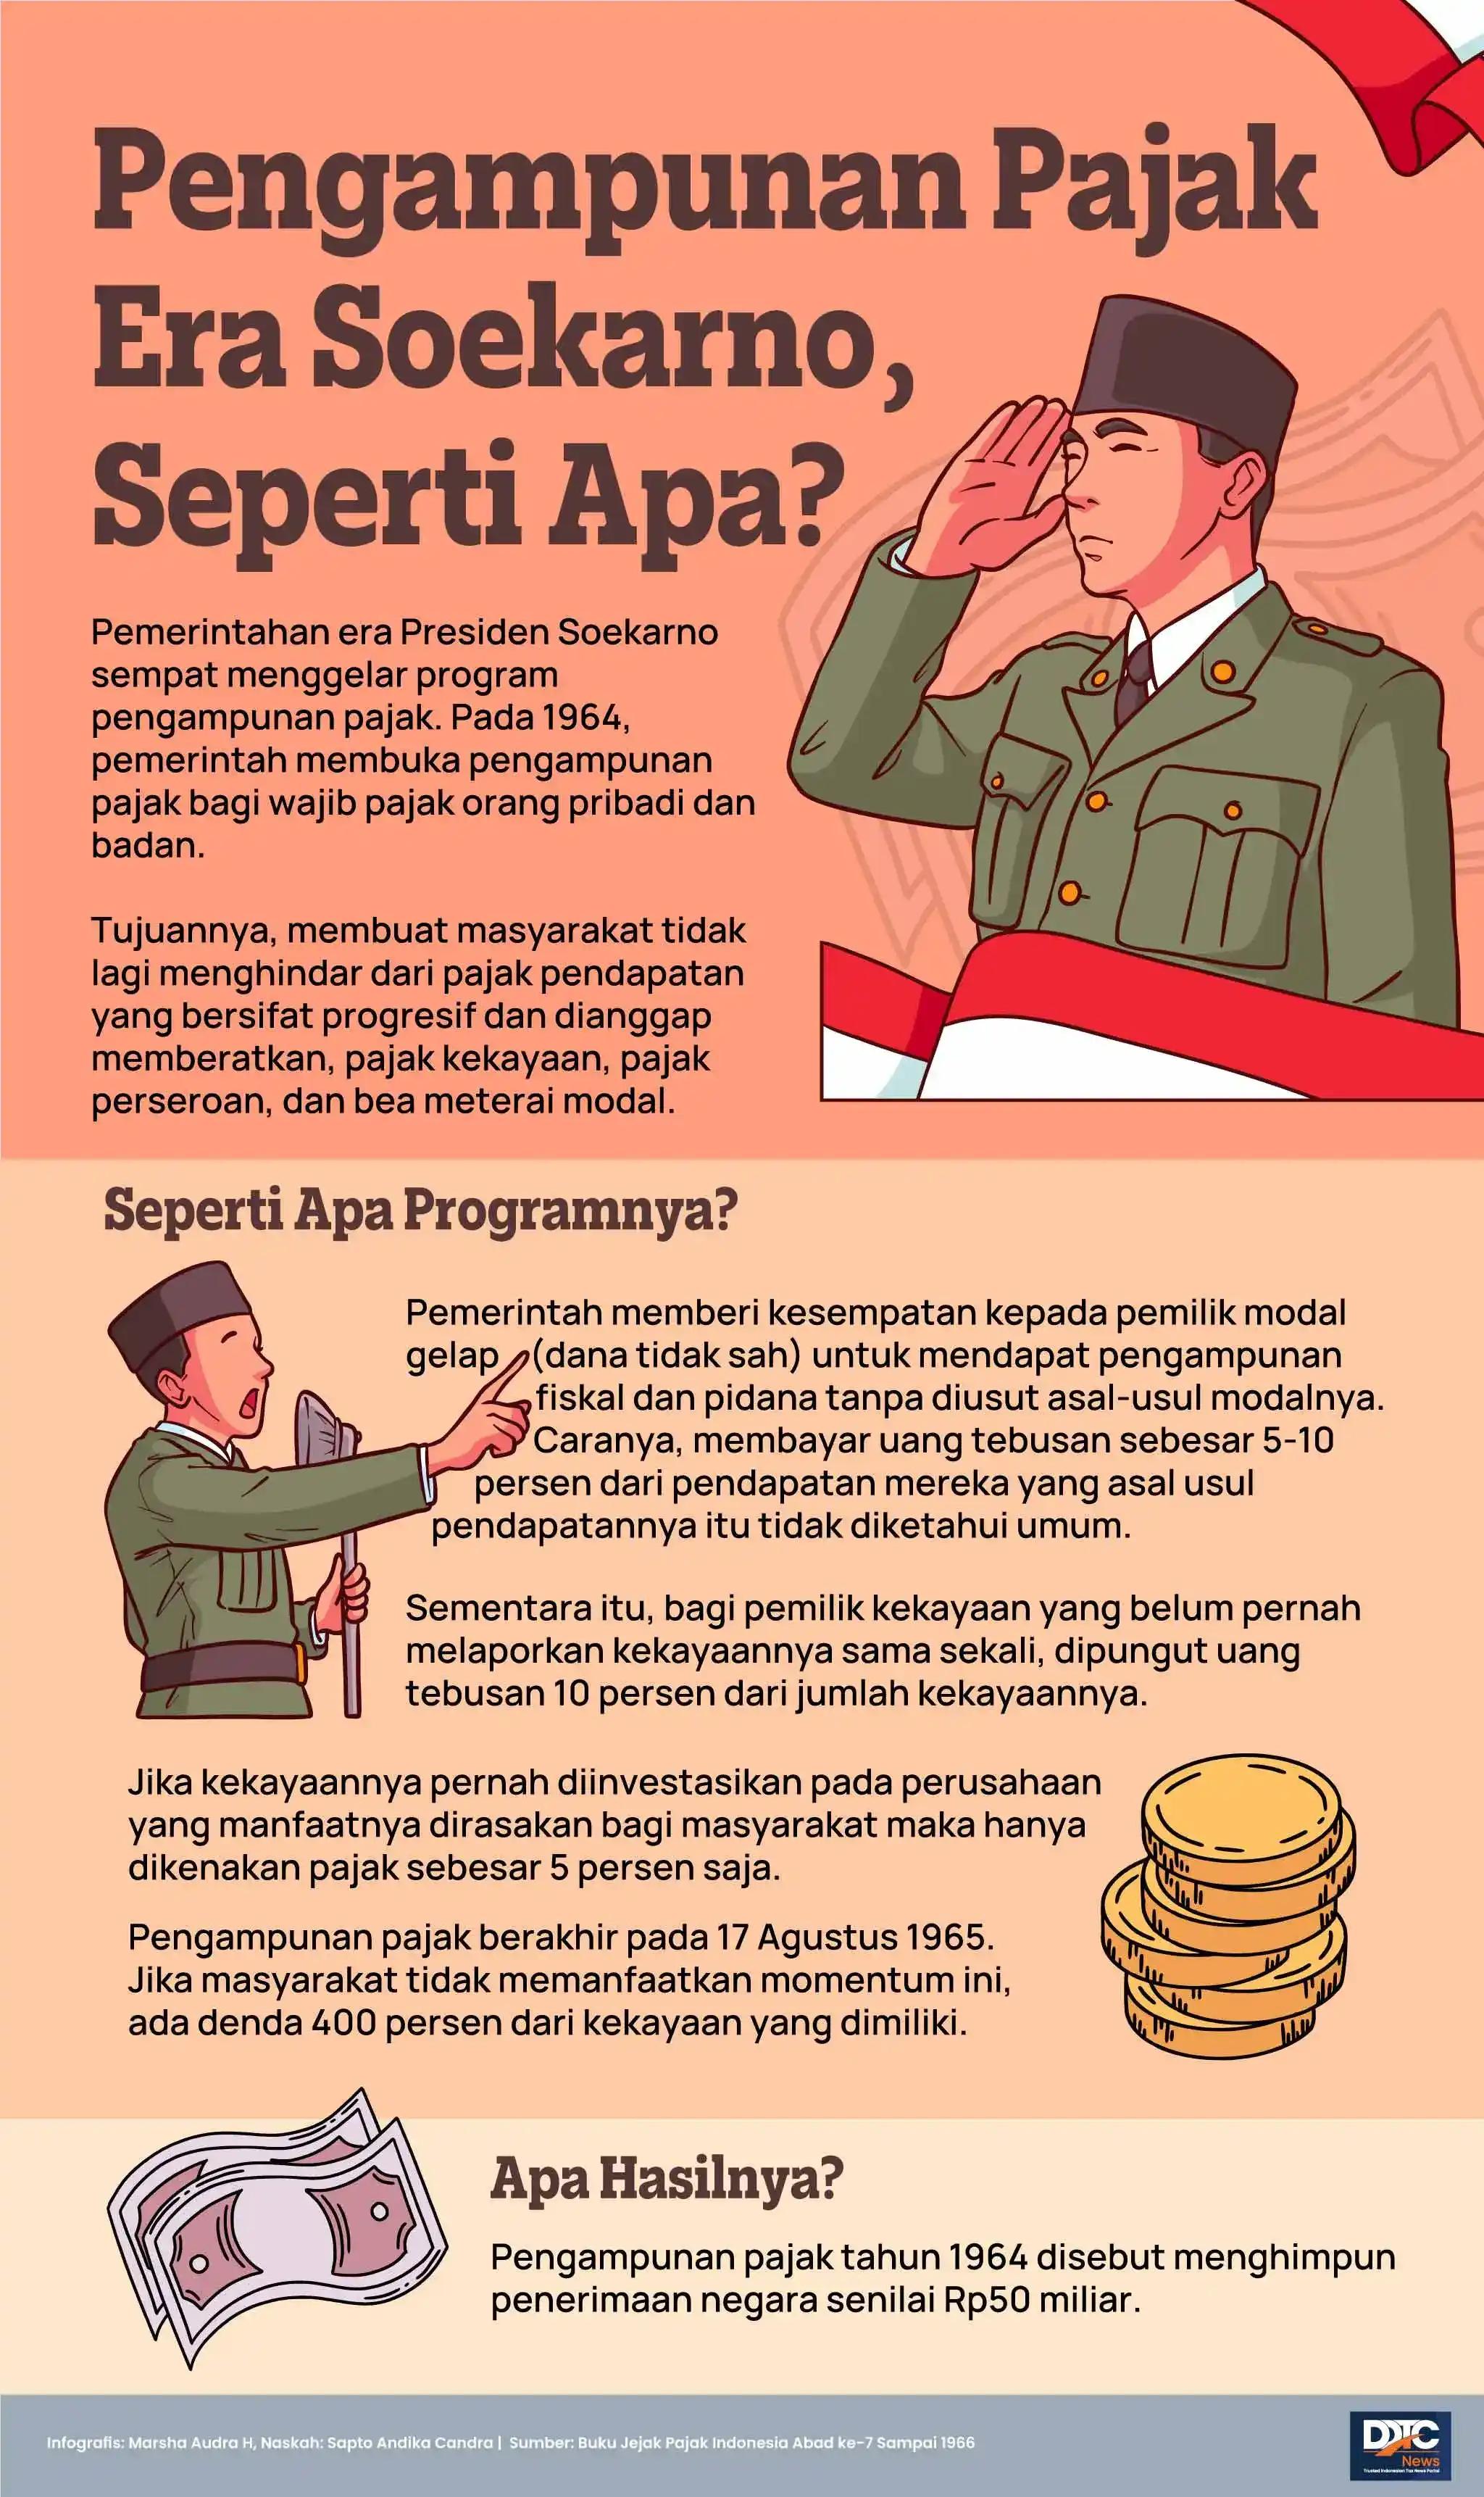 Pengampunan Pajak Era Soekarno, Seperti Apa?